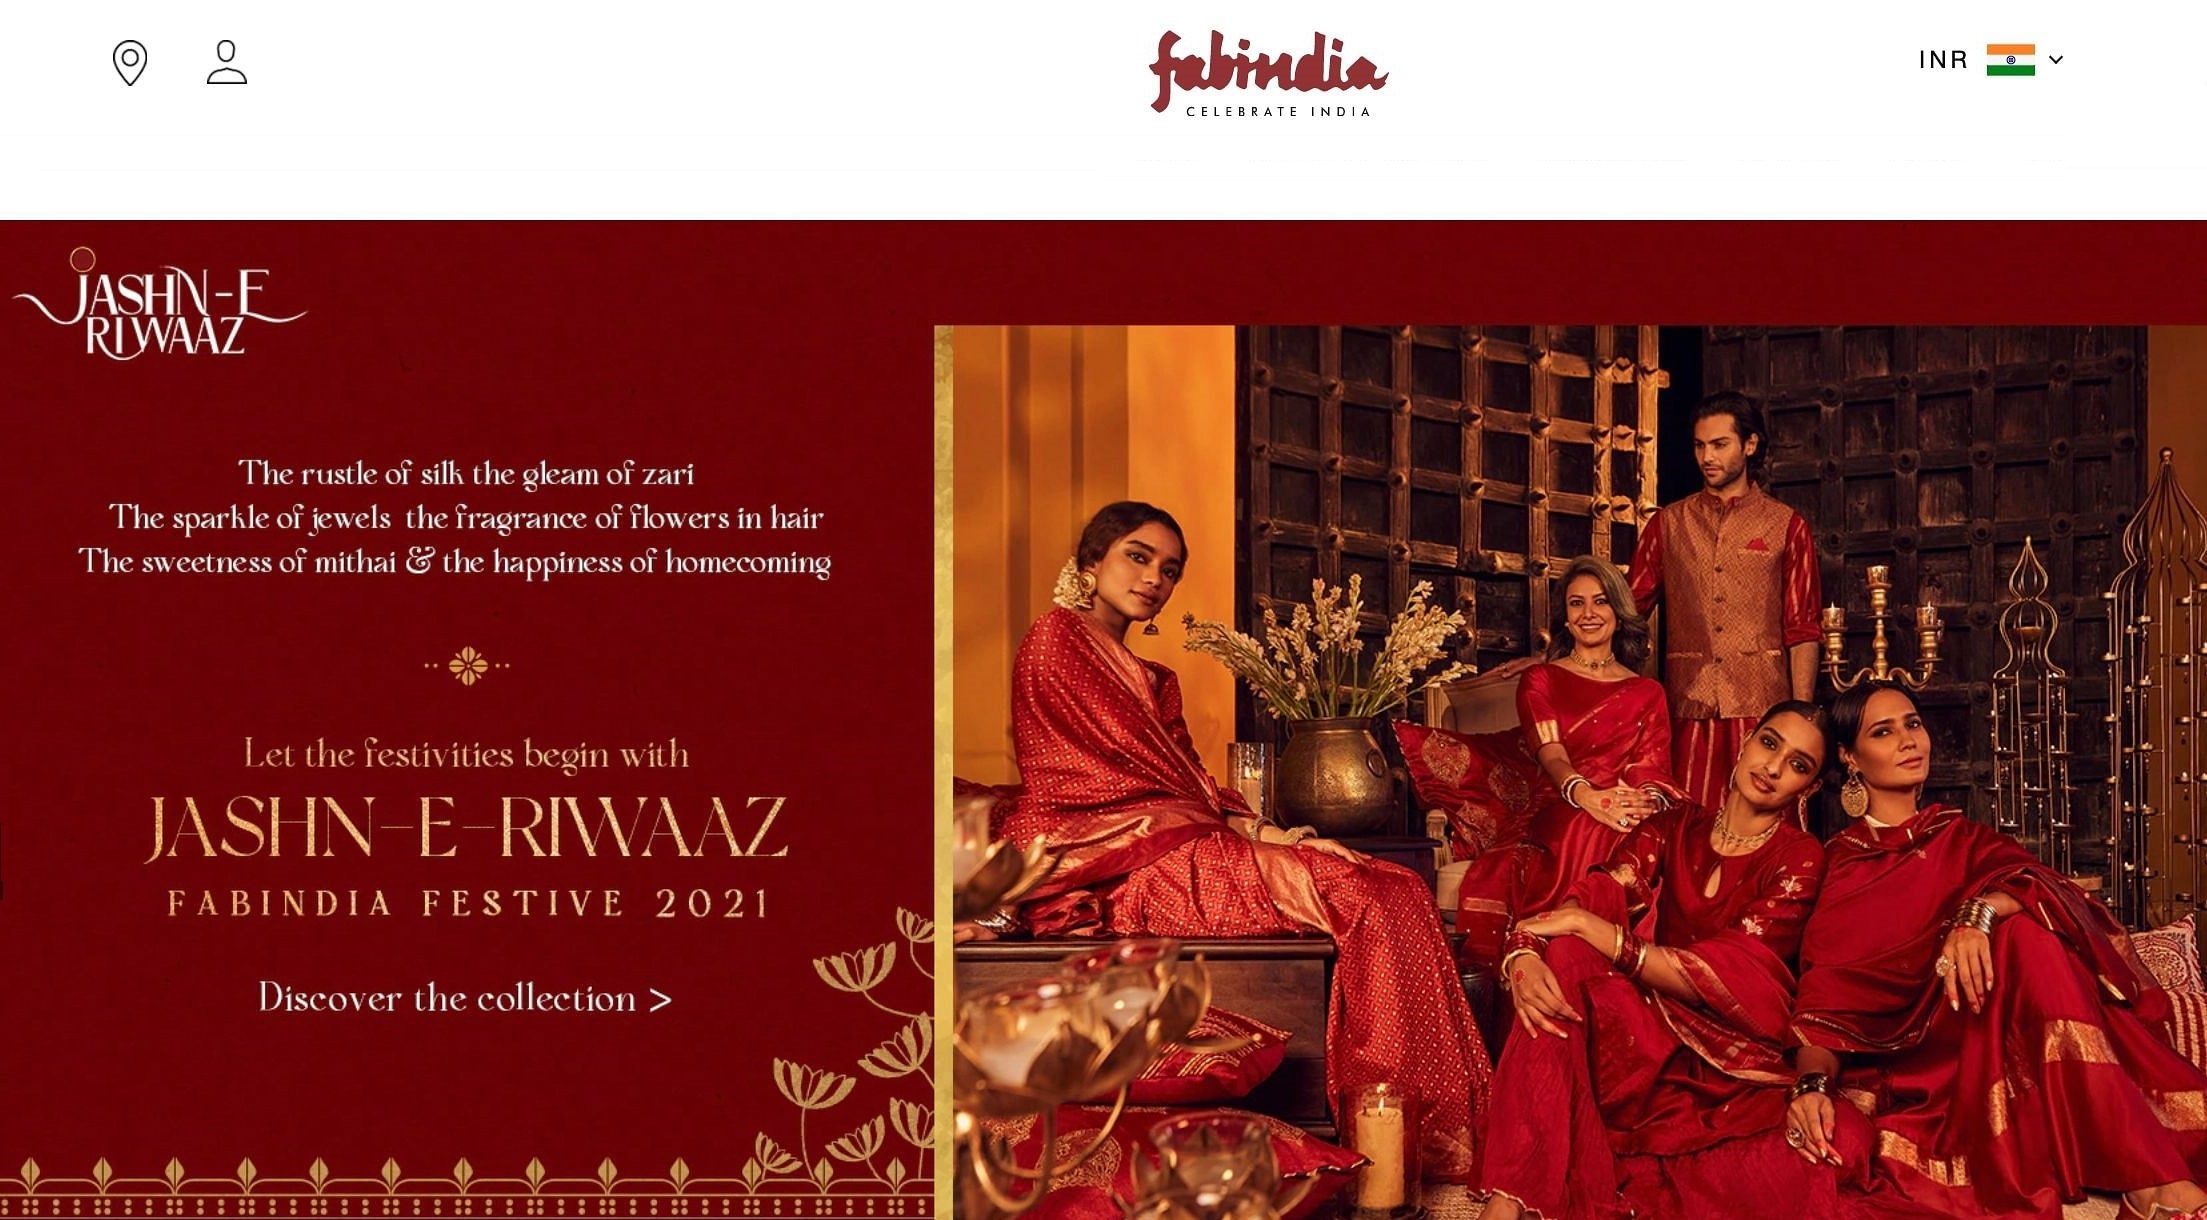 फैब इंडिया का विज्ञापन वापस लेना देश के उद्योग जगत की प्राथमिकताएं दिखाता है